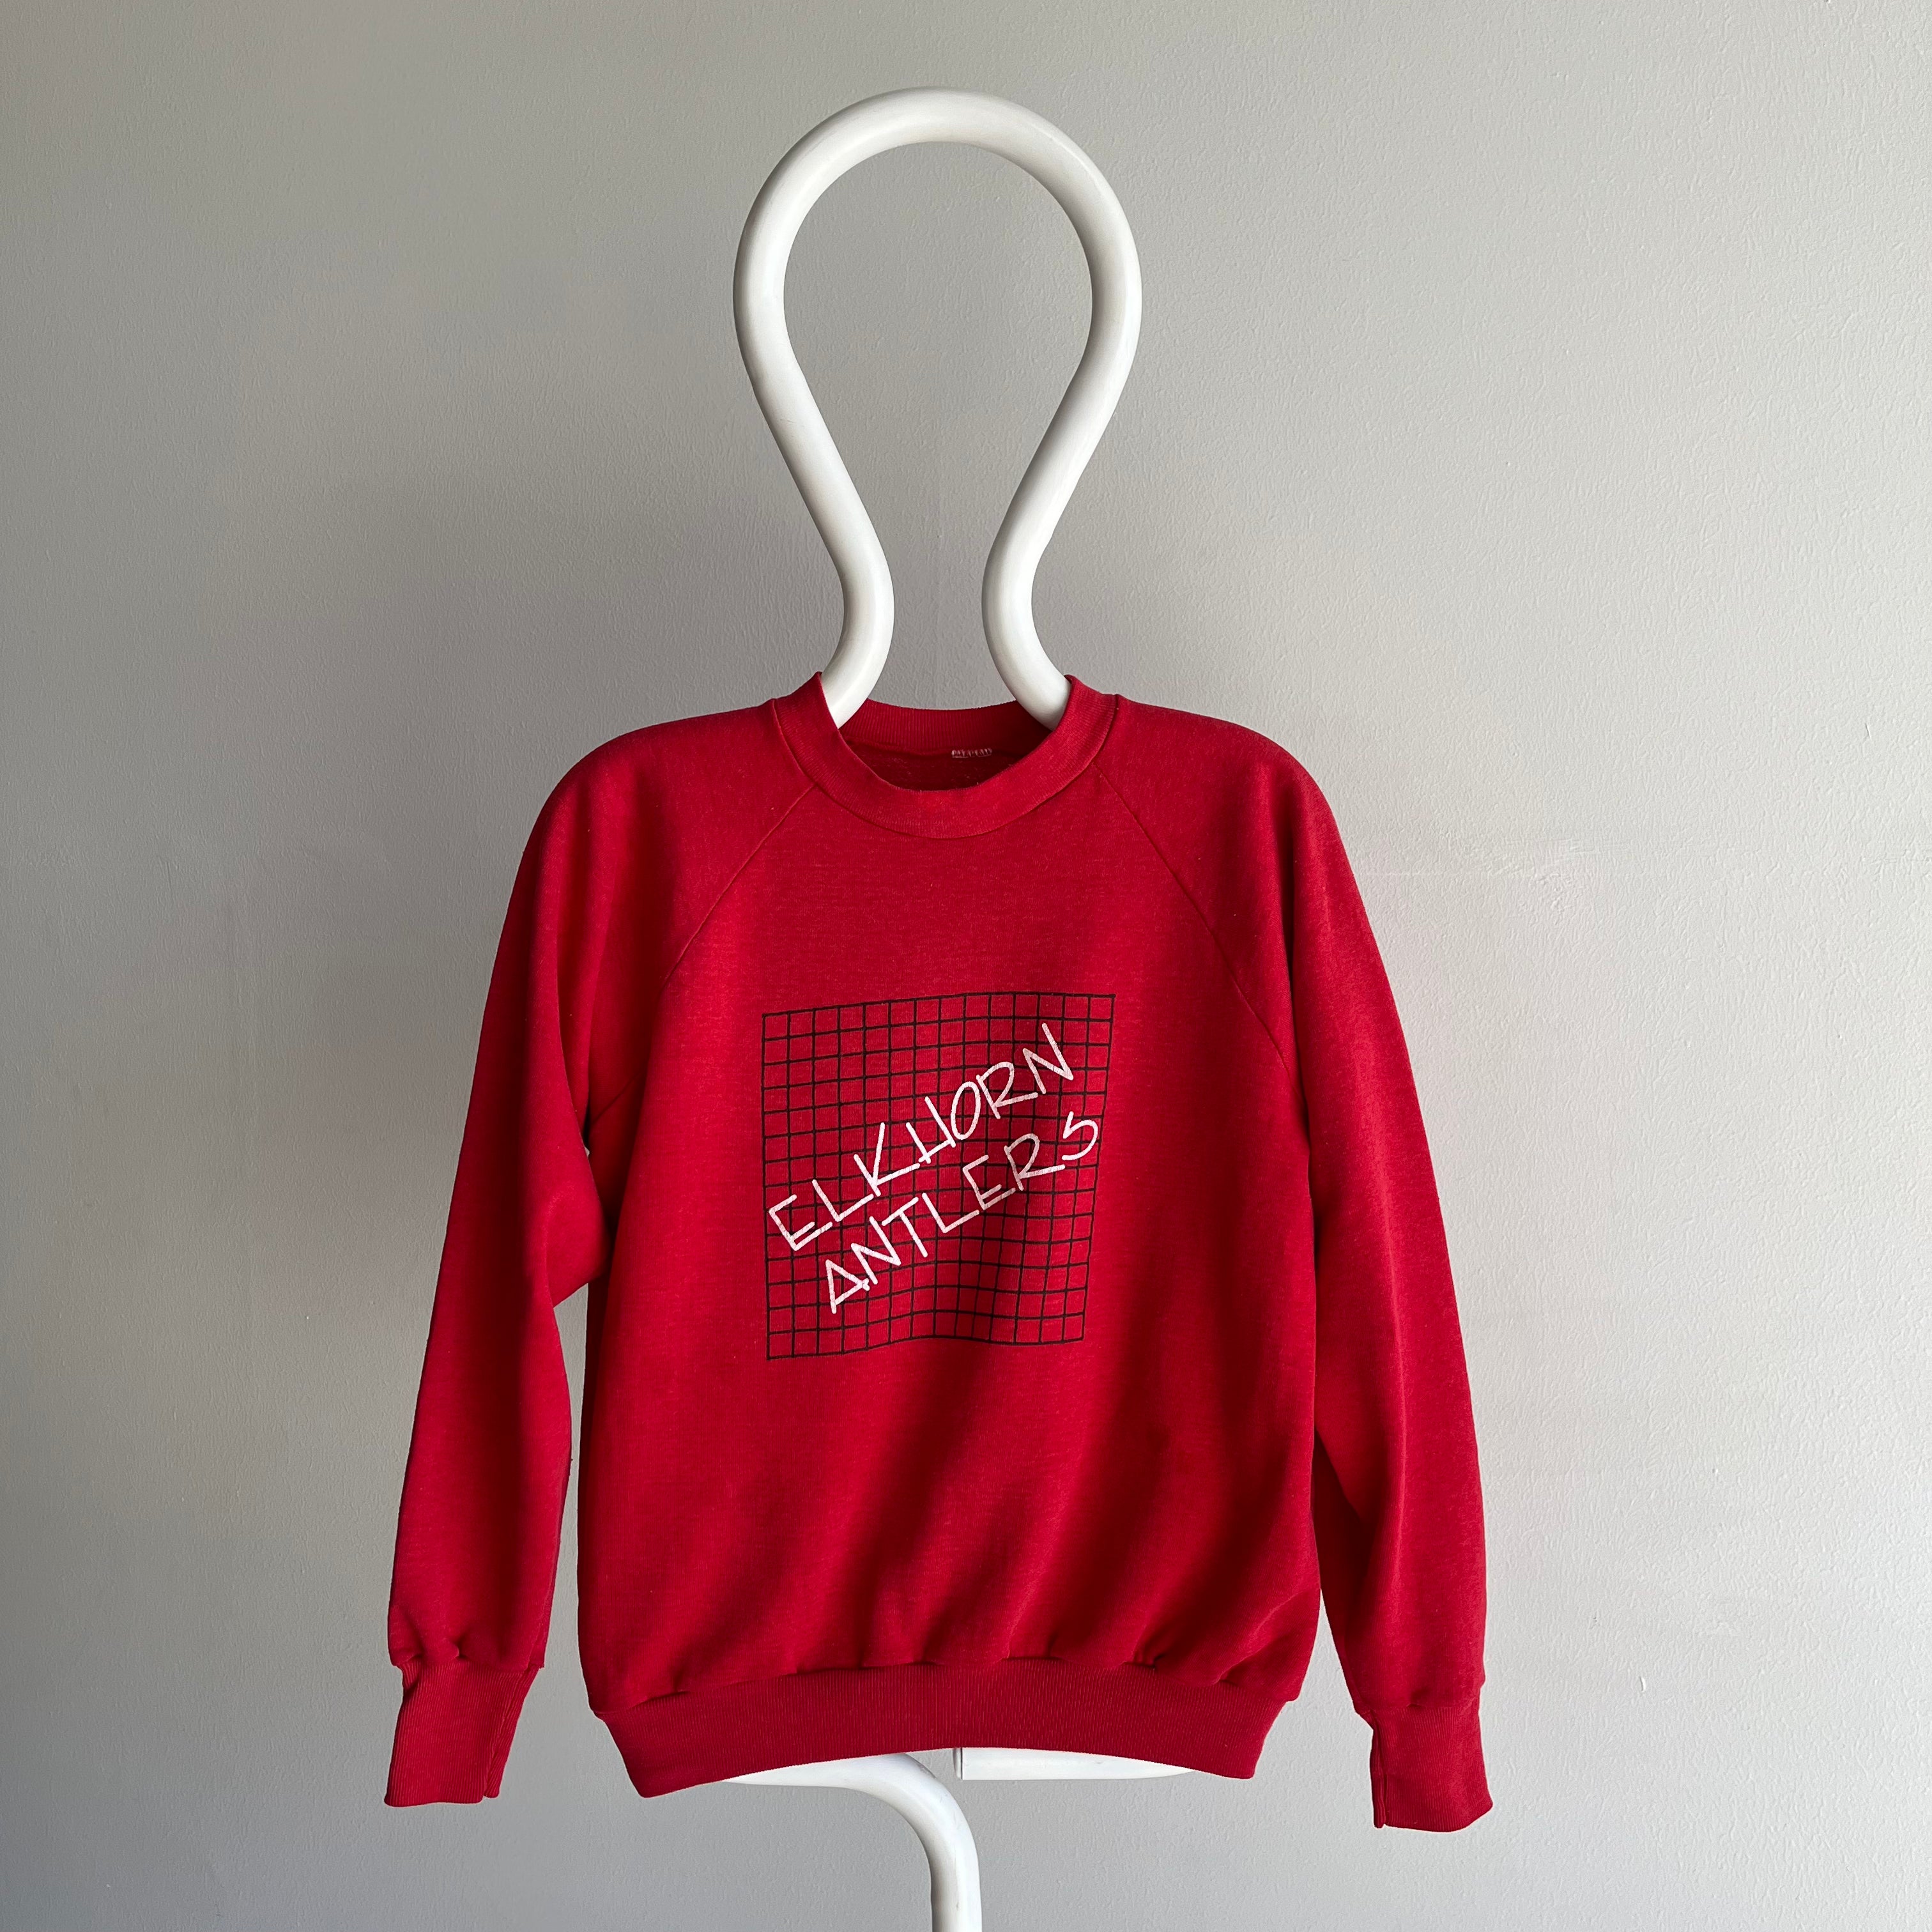 1980s Elkhorn Antlers Sweatshirt